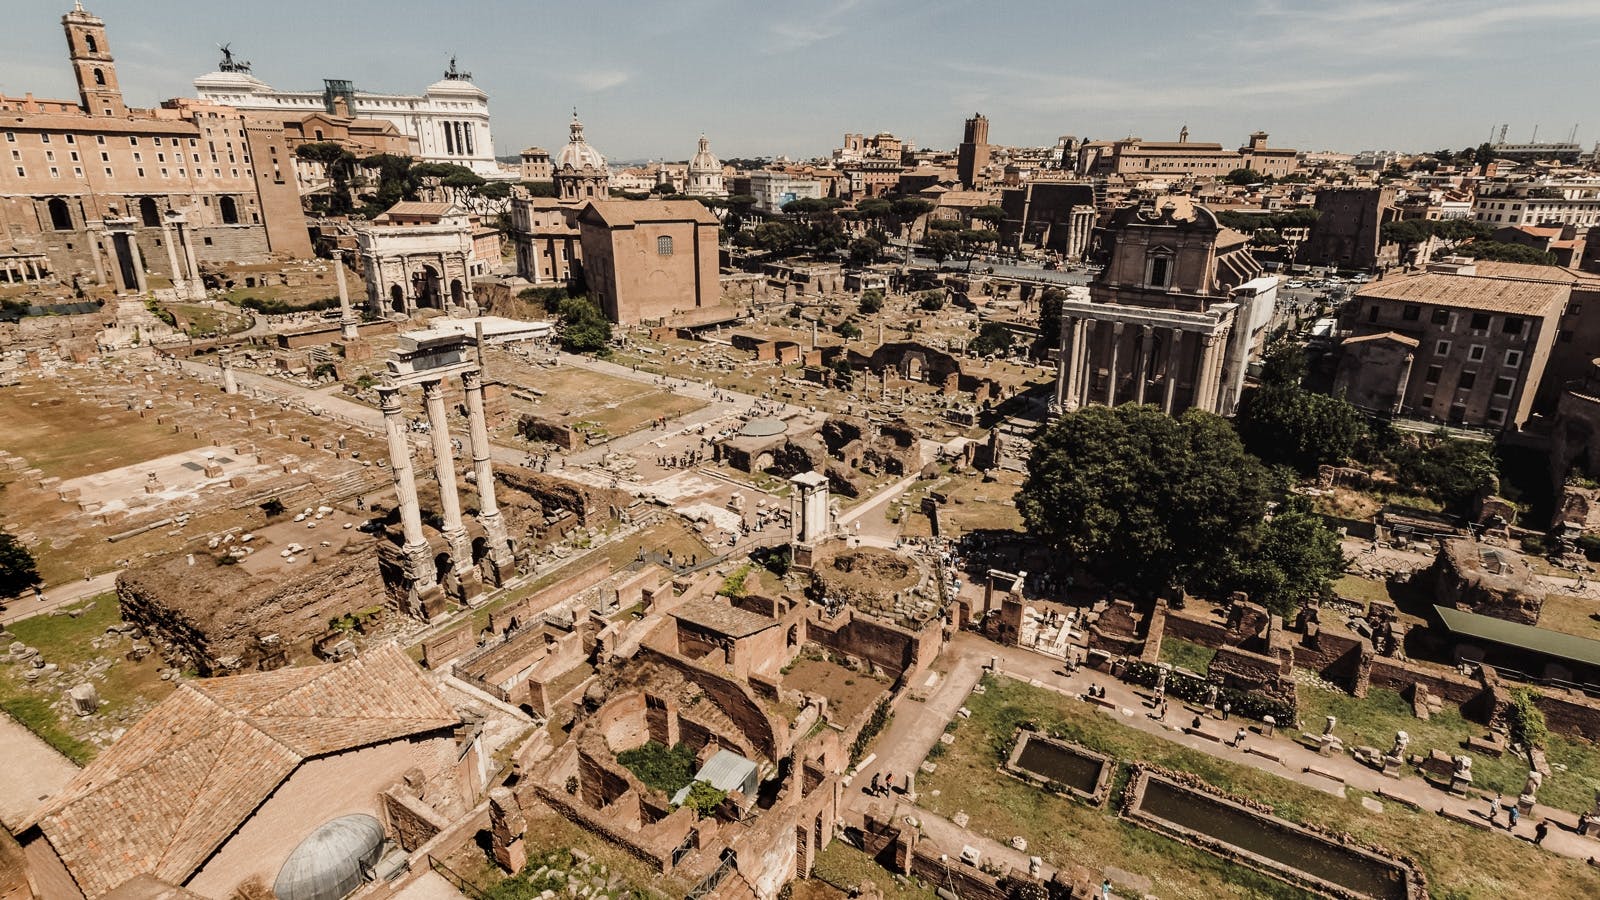 Le meilleur de Rome, visite à pied et accès rapide au Forum romain